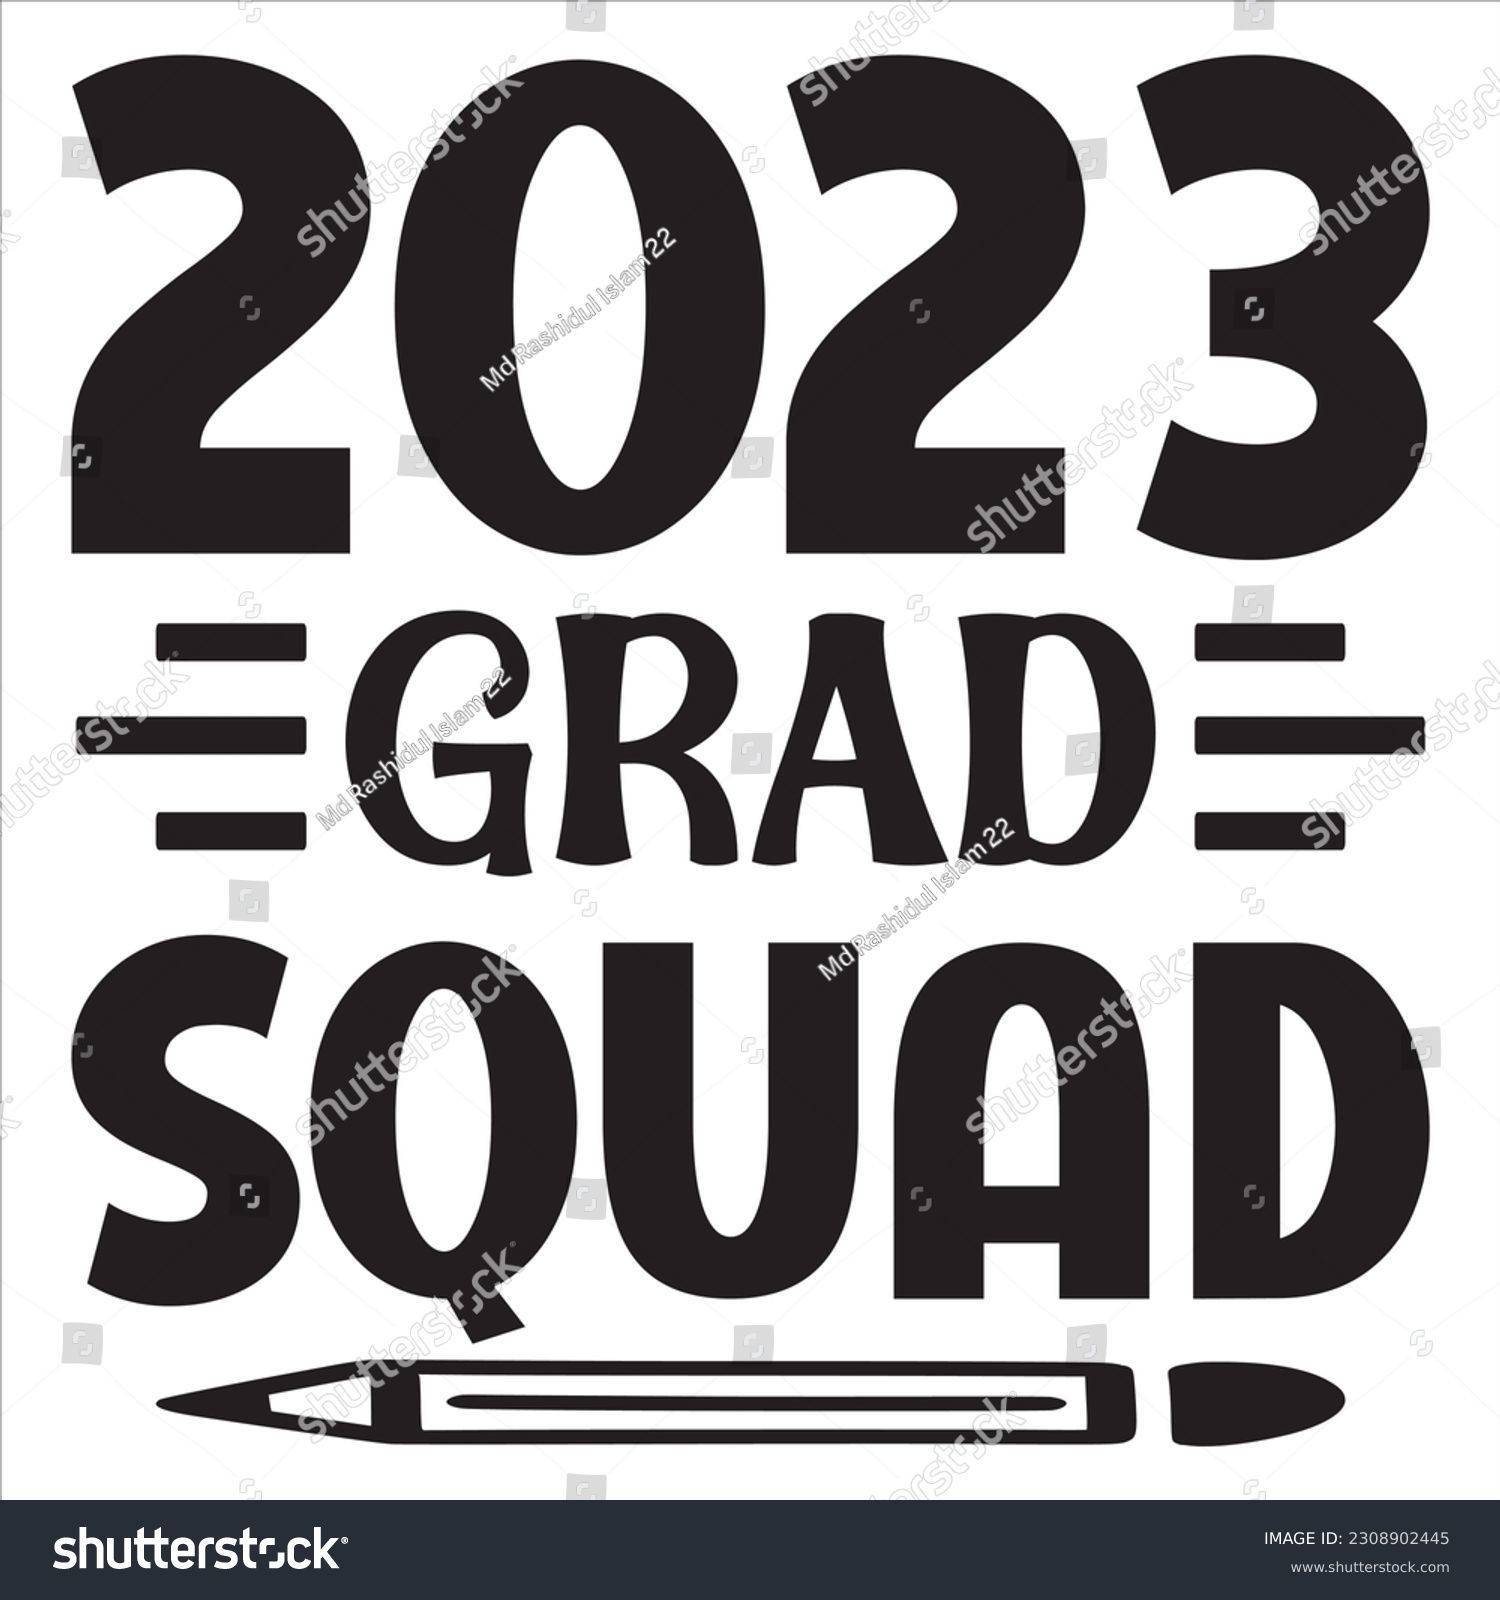 SVG of 2023 Grad Squad SVG Design Vector File. svg